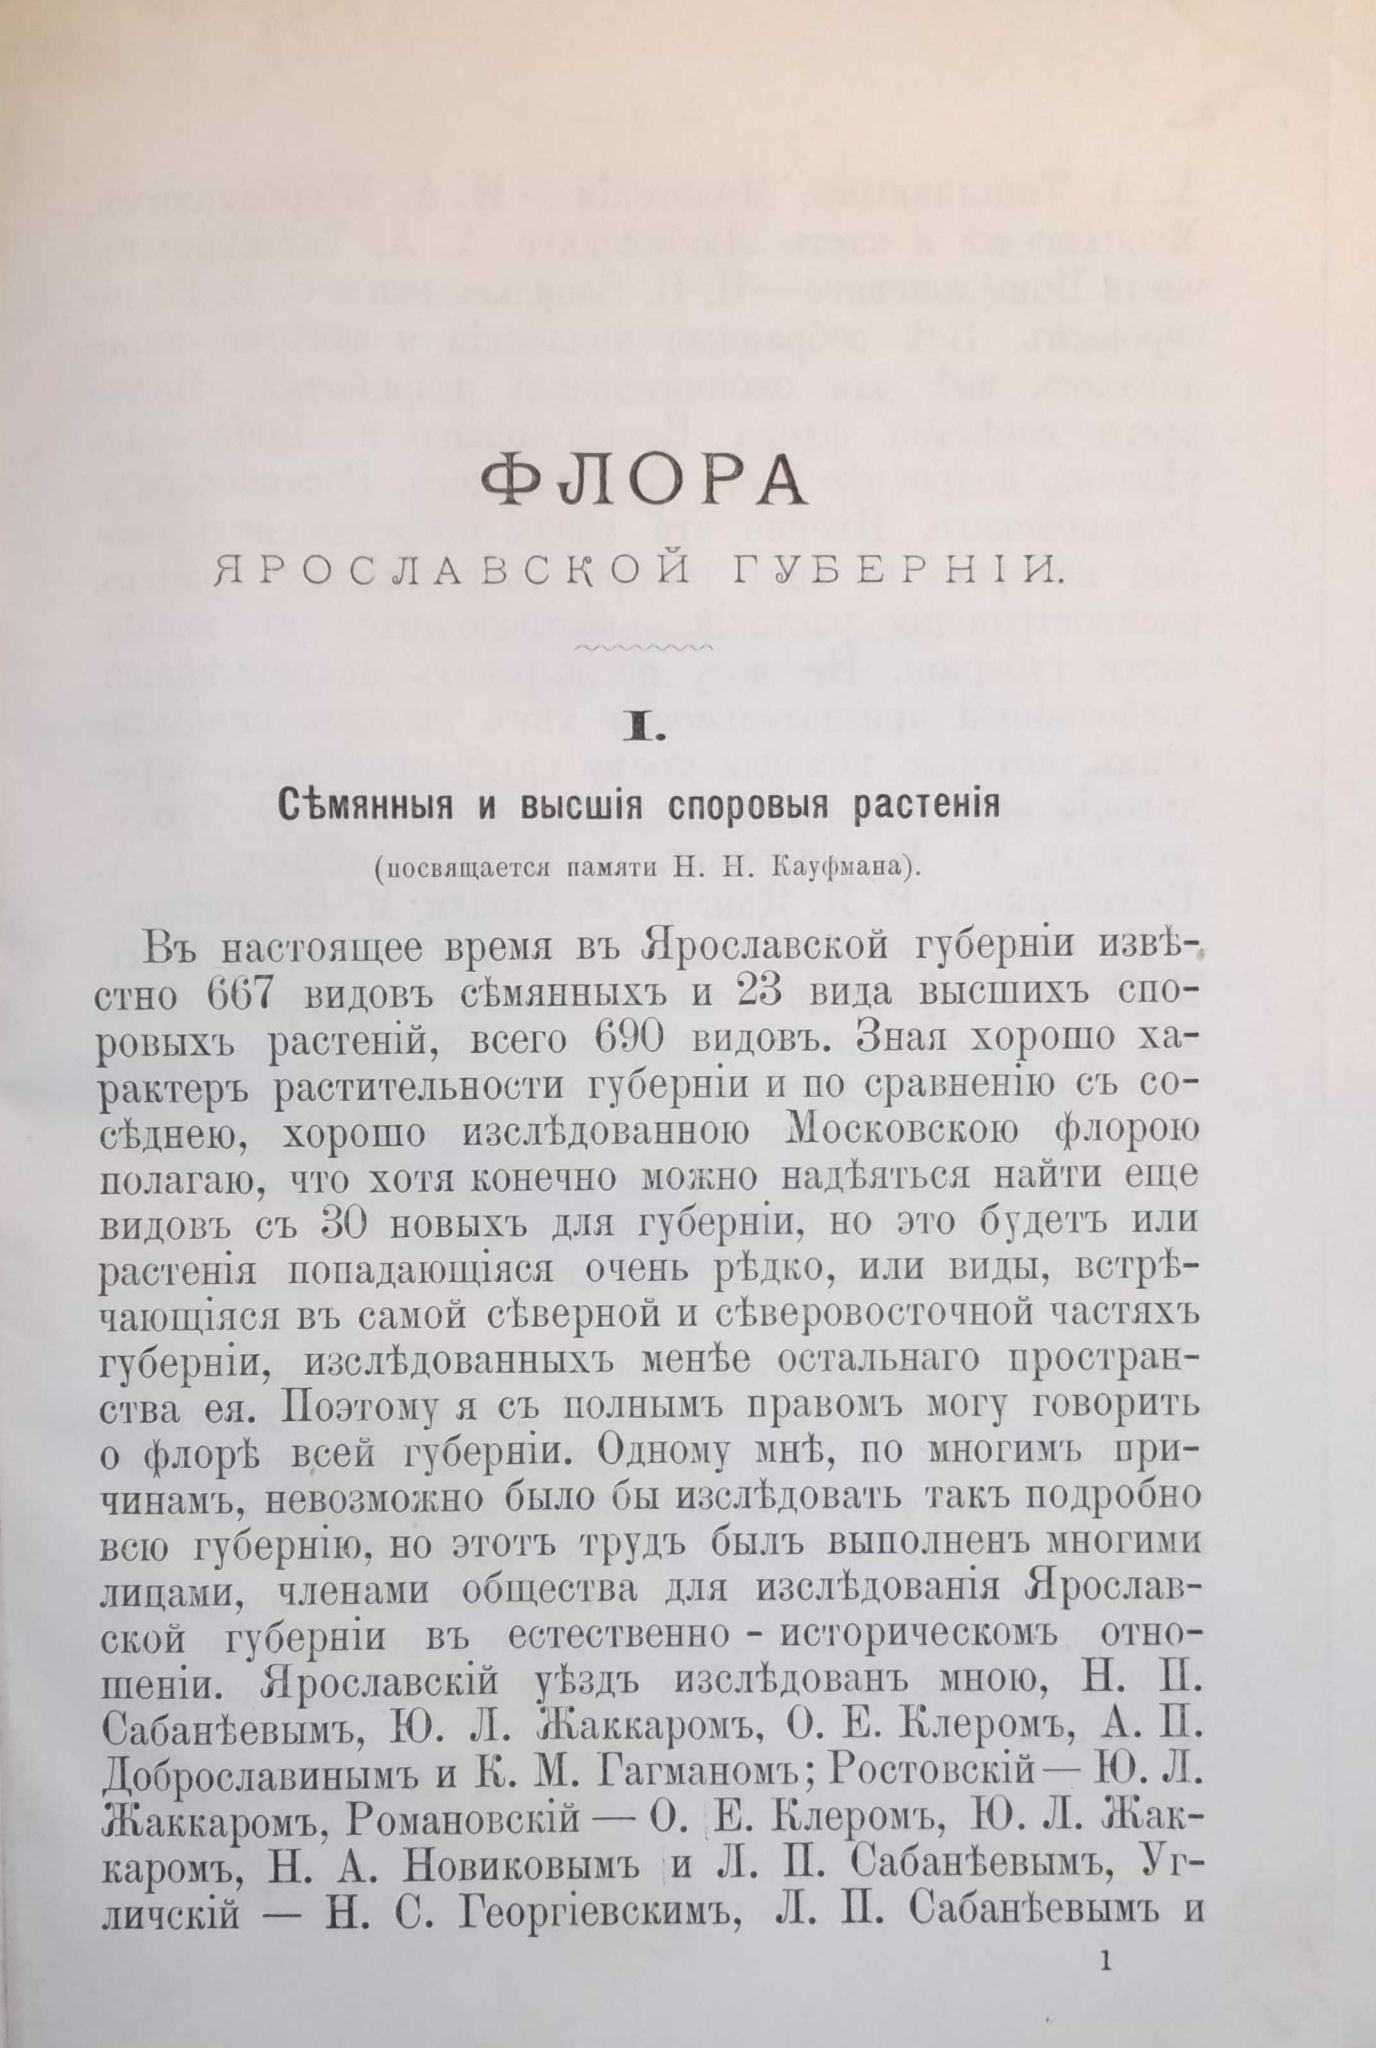 Первая страница статьи А. С. Петровского «Флора Ярославской губернии».